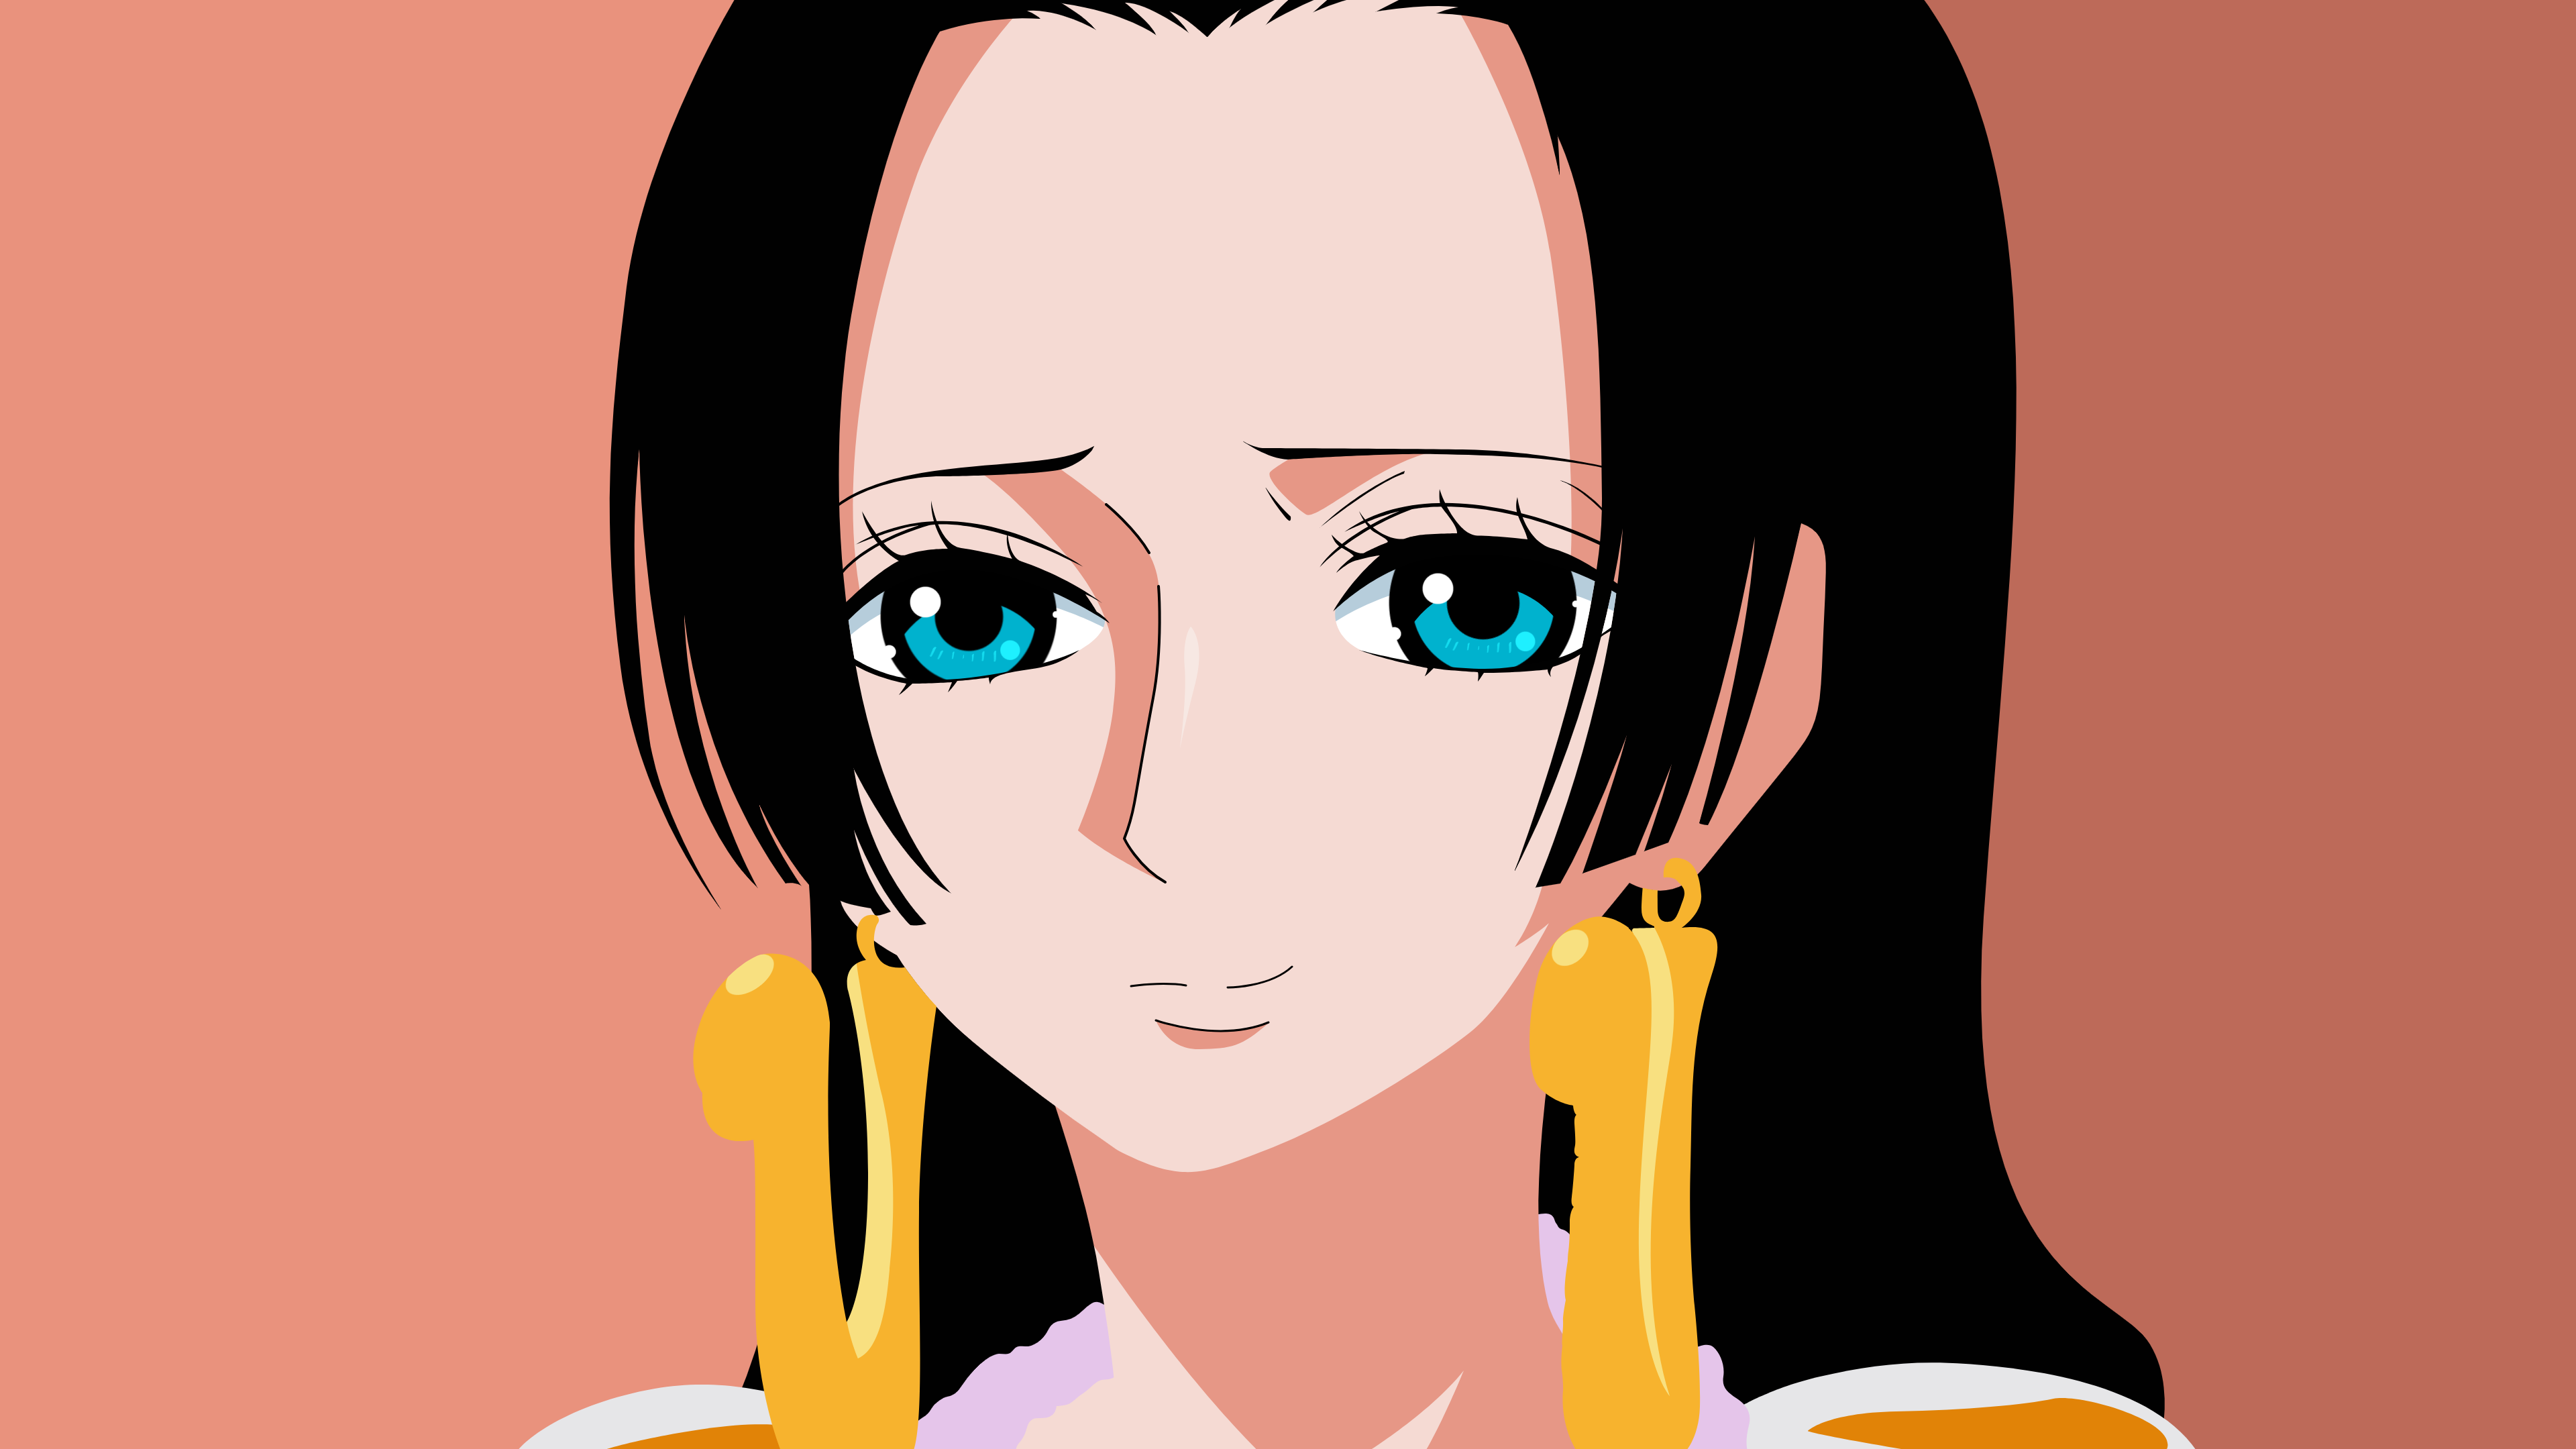 Anime Girls One Piece Boa Hancock Minimalism Photoshopped Fan Art Simple Background Orange Backgroun 3840x2160